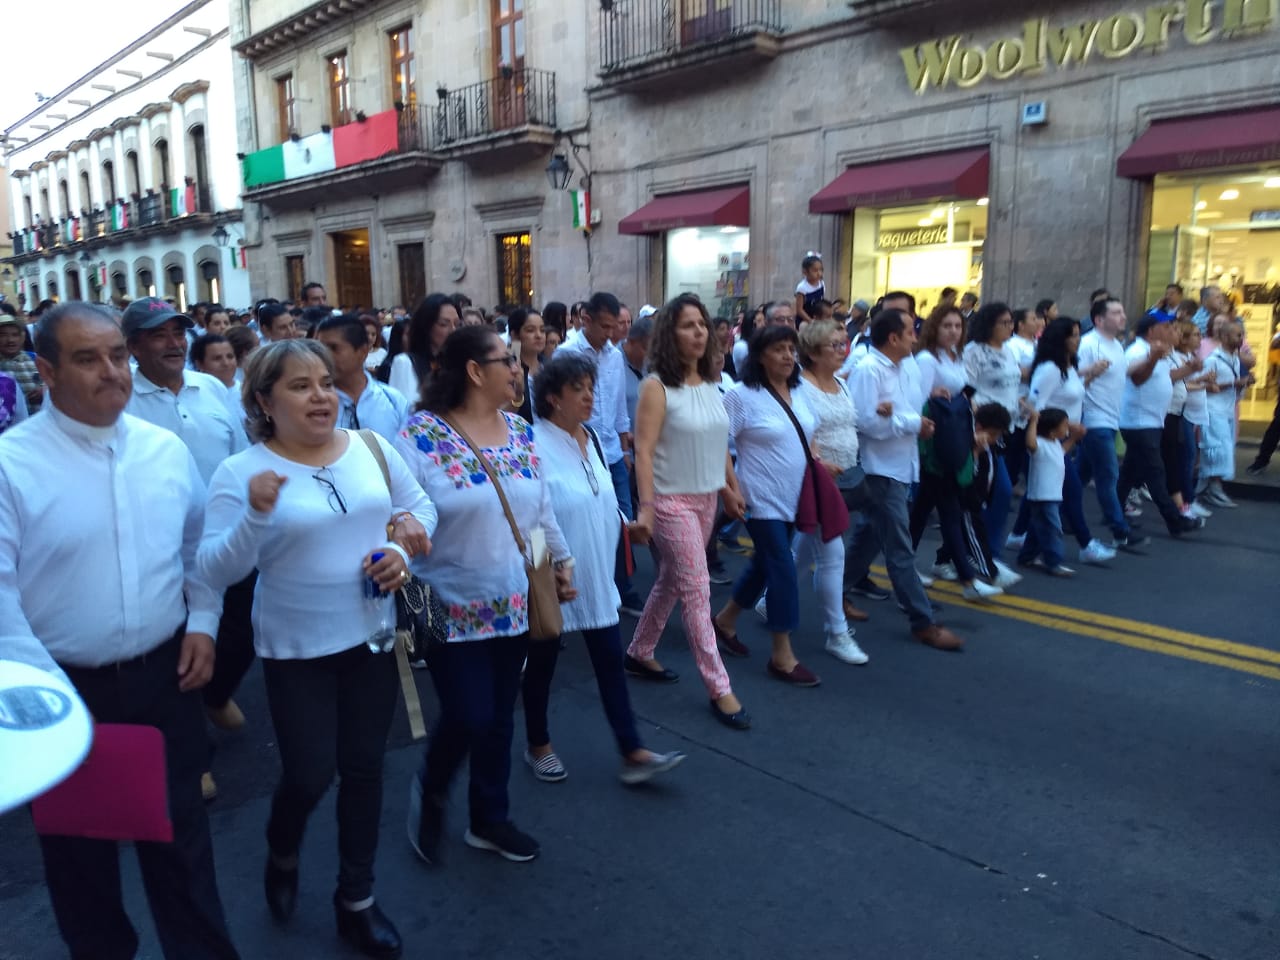 Para Morón, marcha por la paz, contribuye a la tranquilidad de Morelia